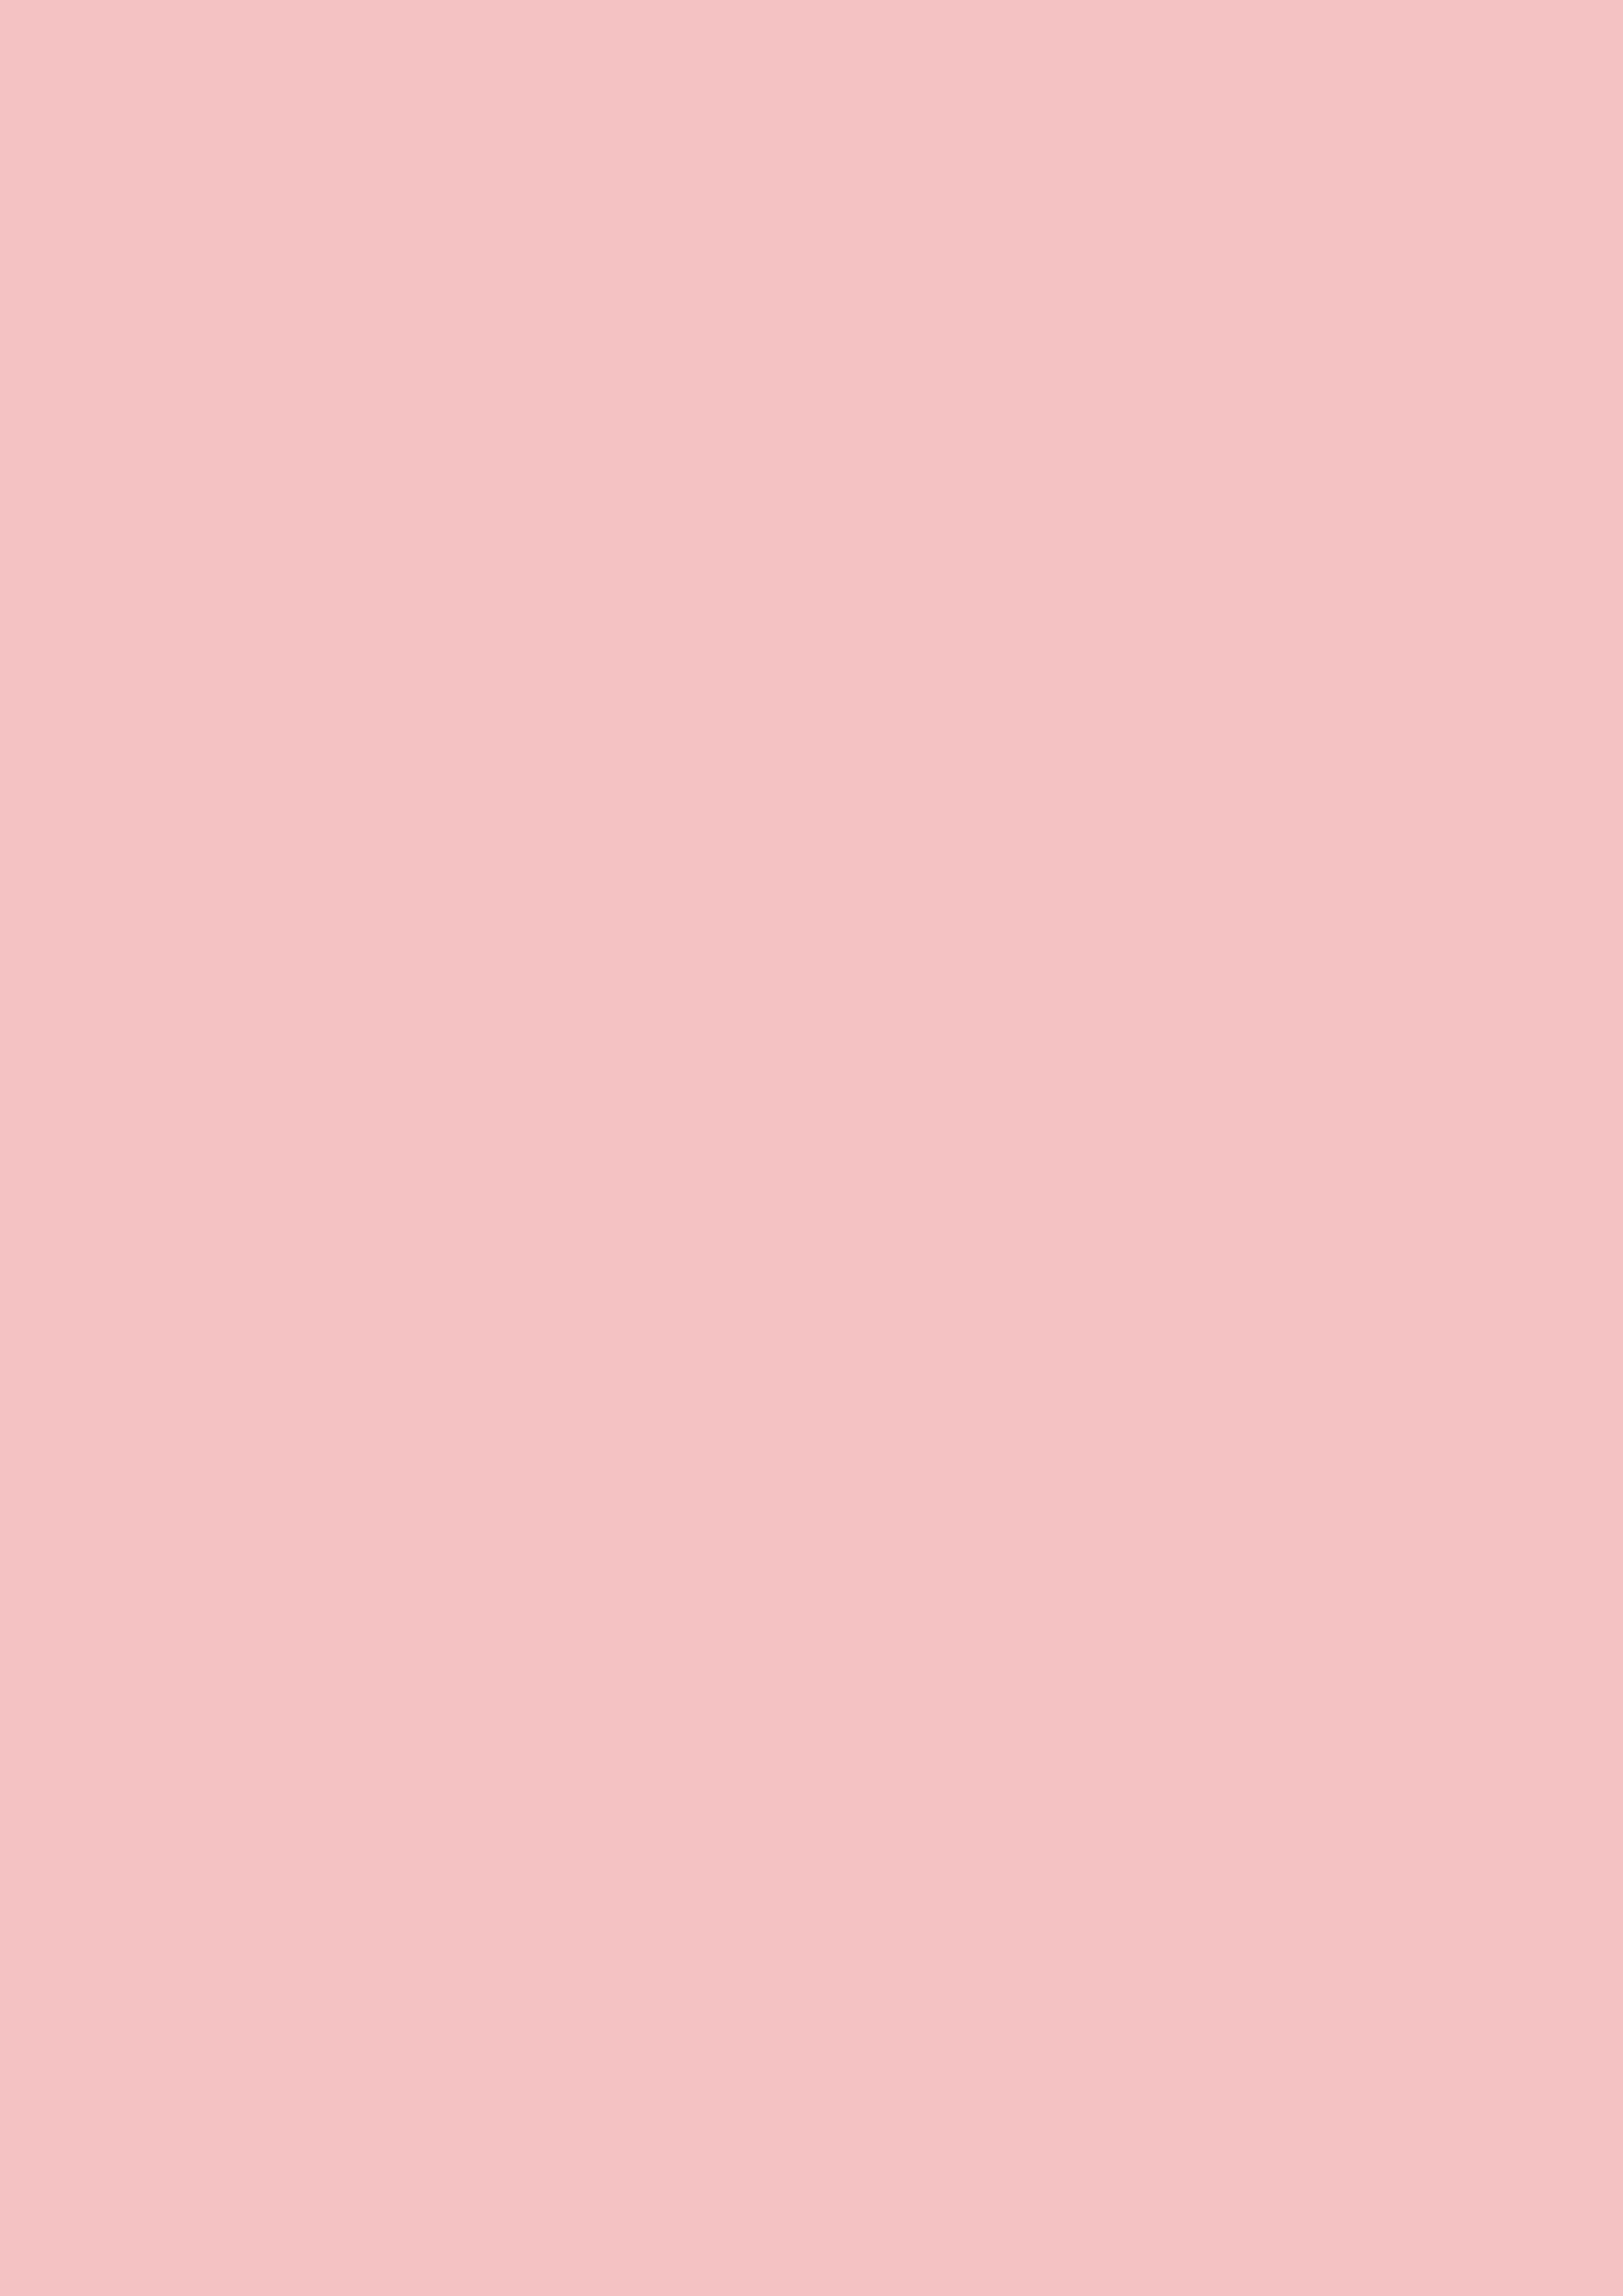 2480x3508 Tea Rose Rose Solid Color Background